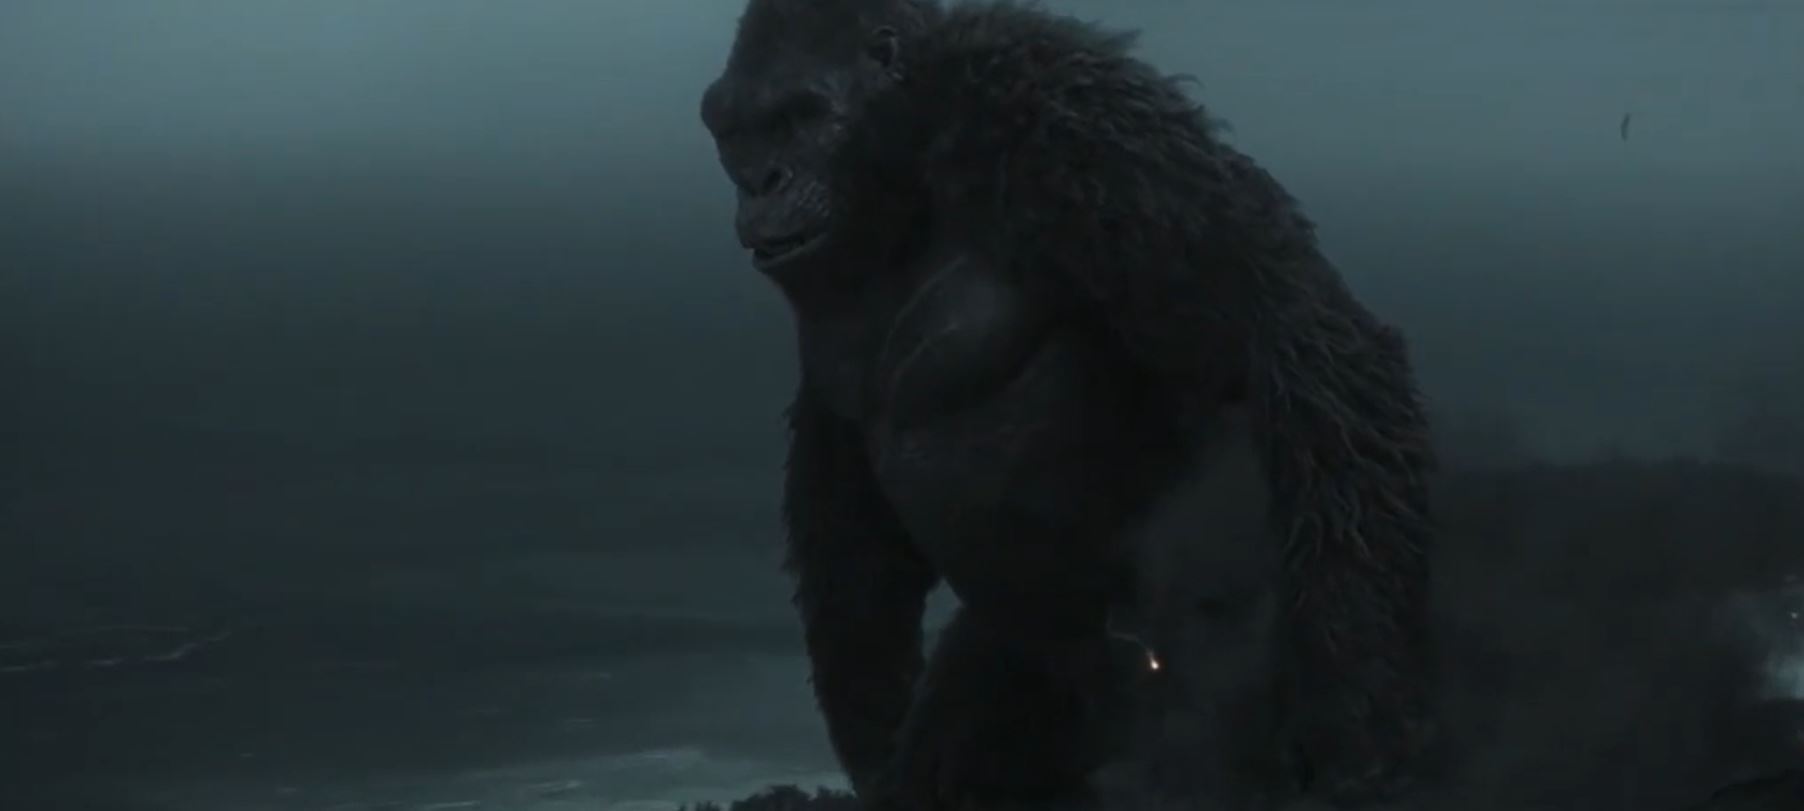 Call Of Duty Warzone : Opération Monarch : une bande-annonce qui annonce un affrontement entre King Kong et Godzilla